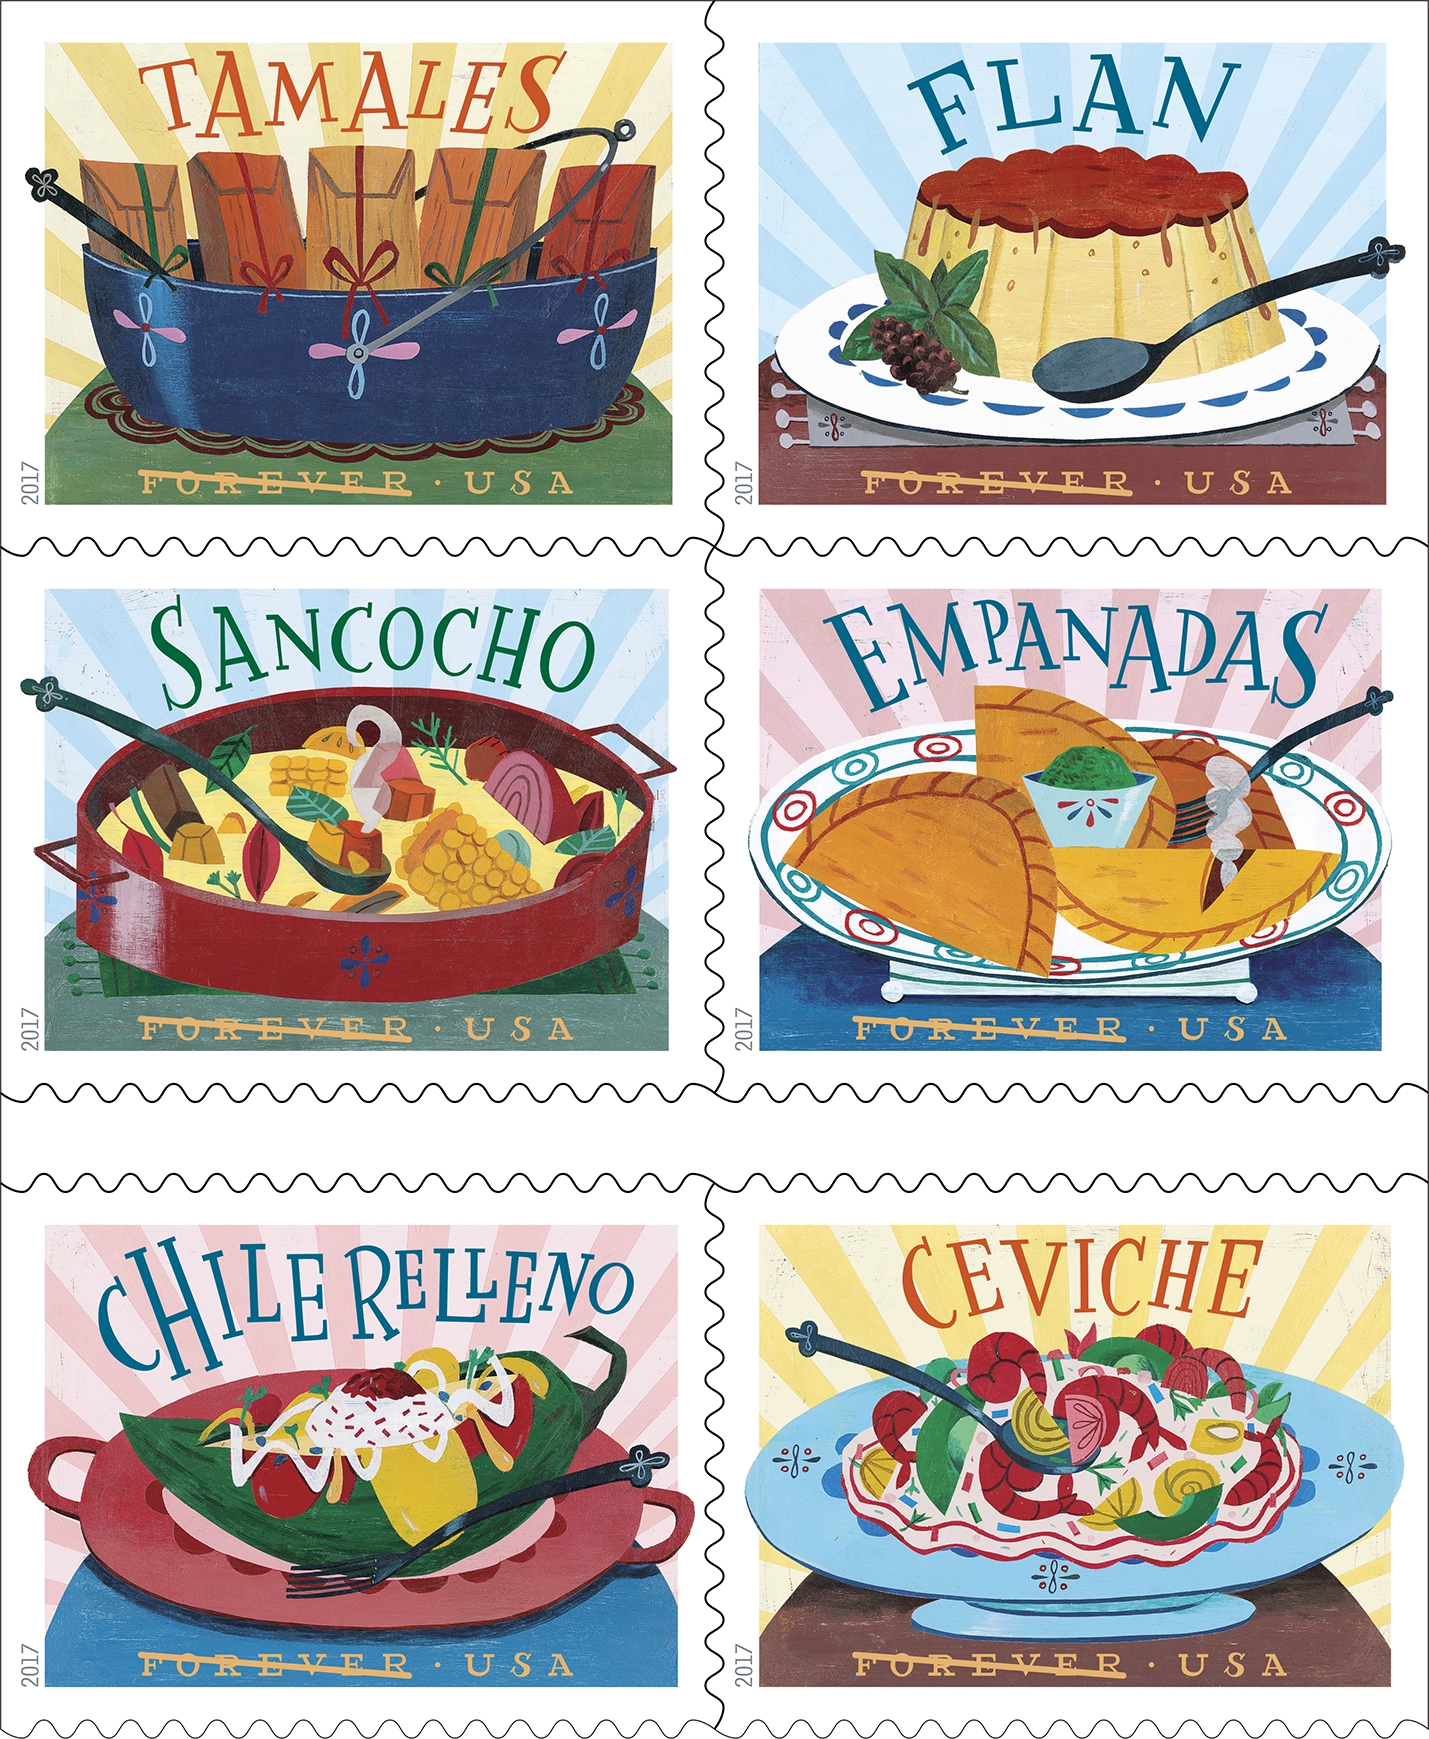 Delicioso stamps